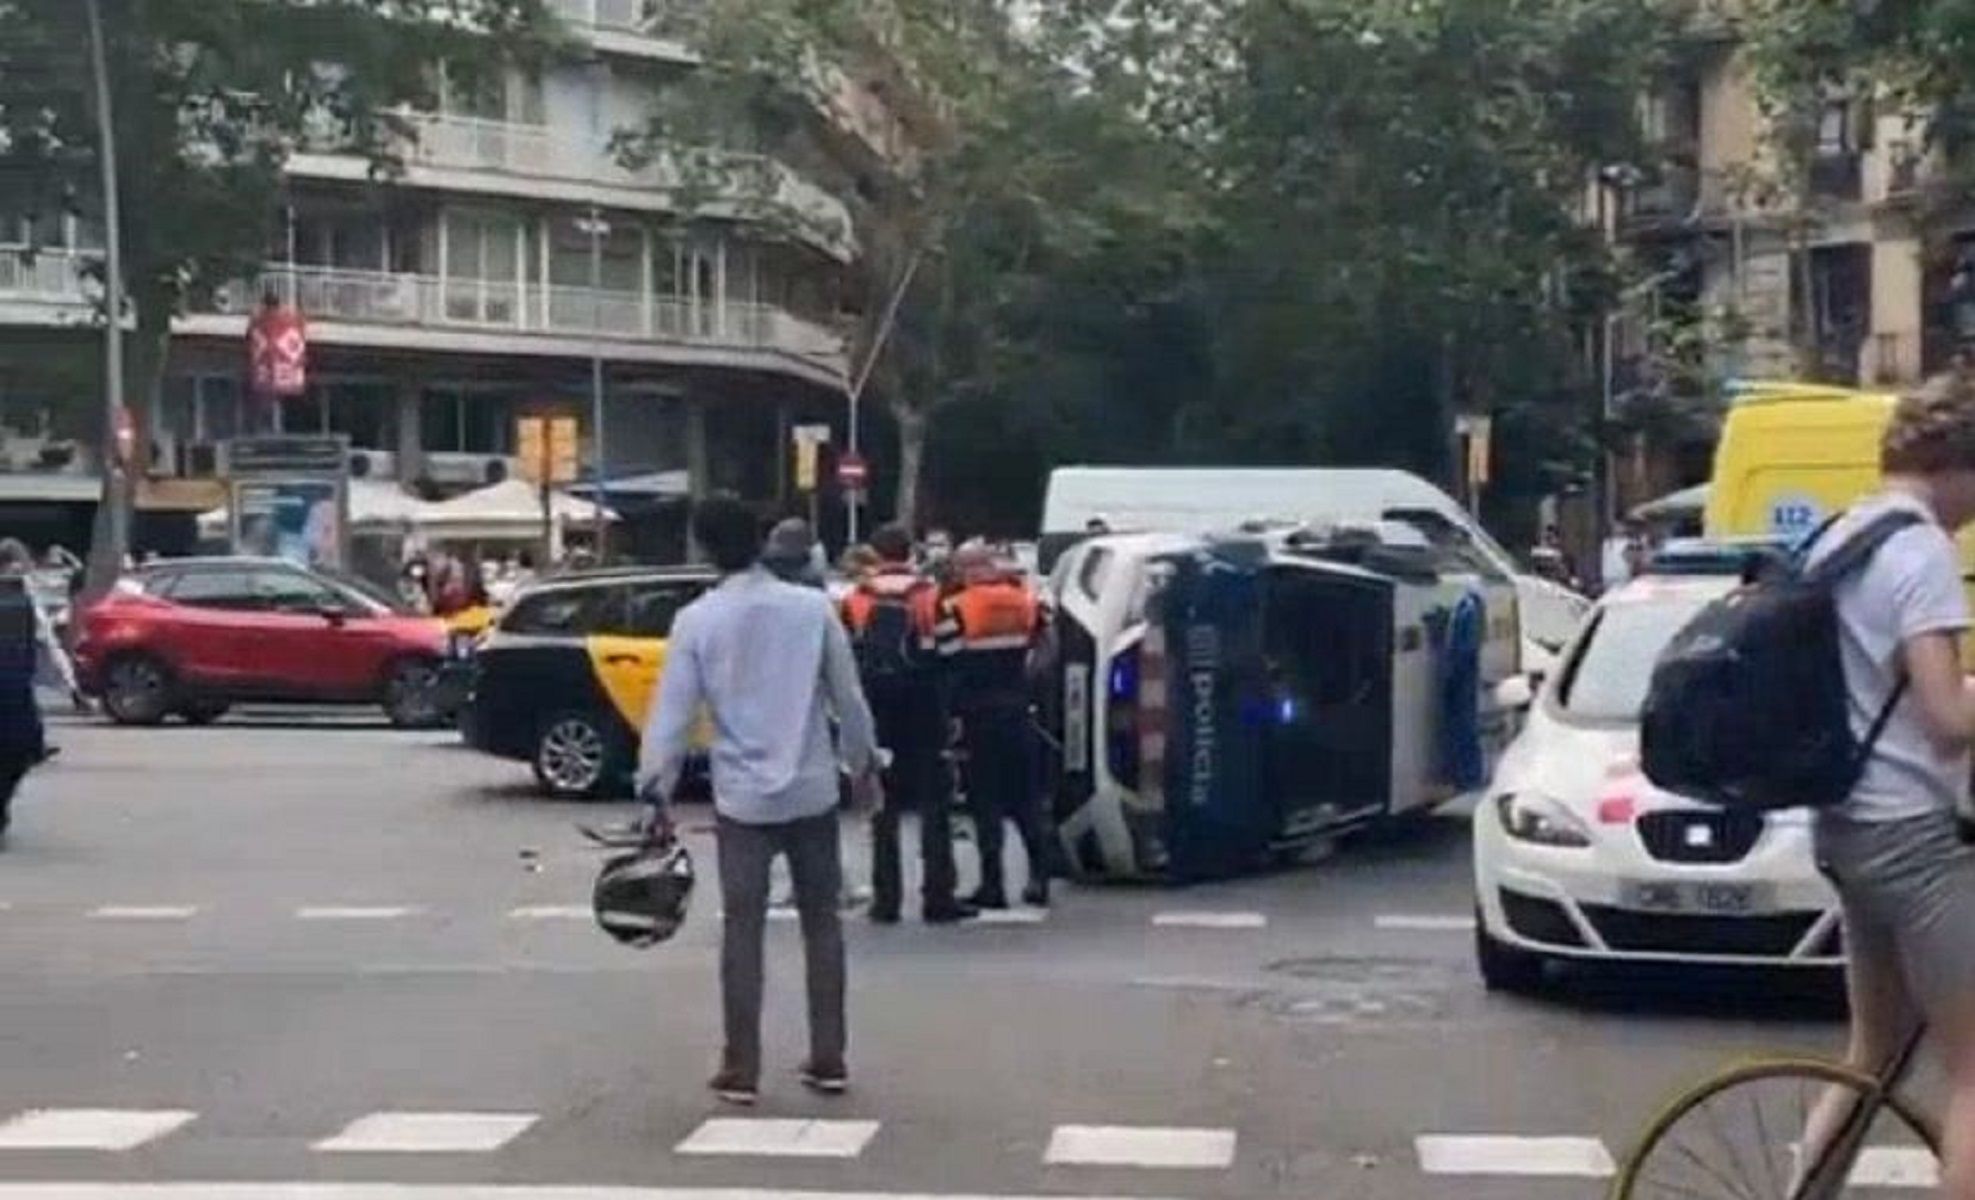 Accidente Taxi Mossos d'Esquadra / Cedida